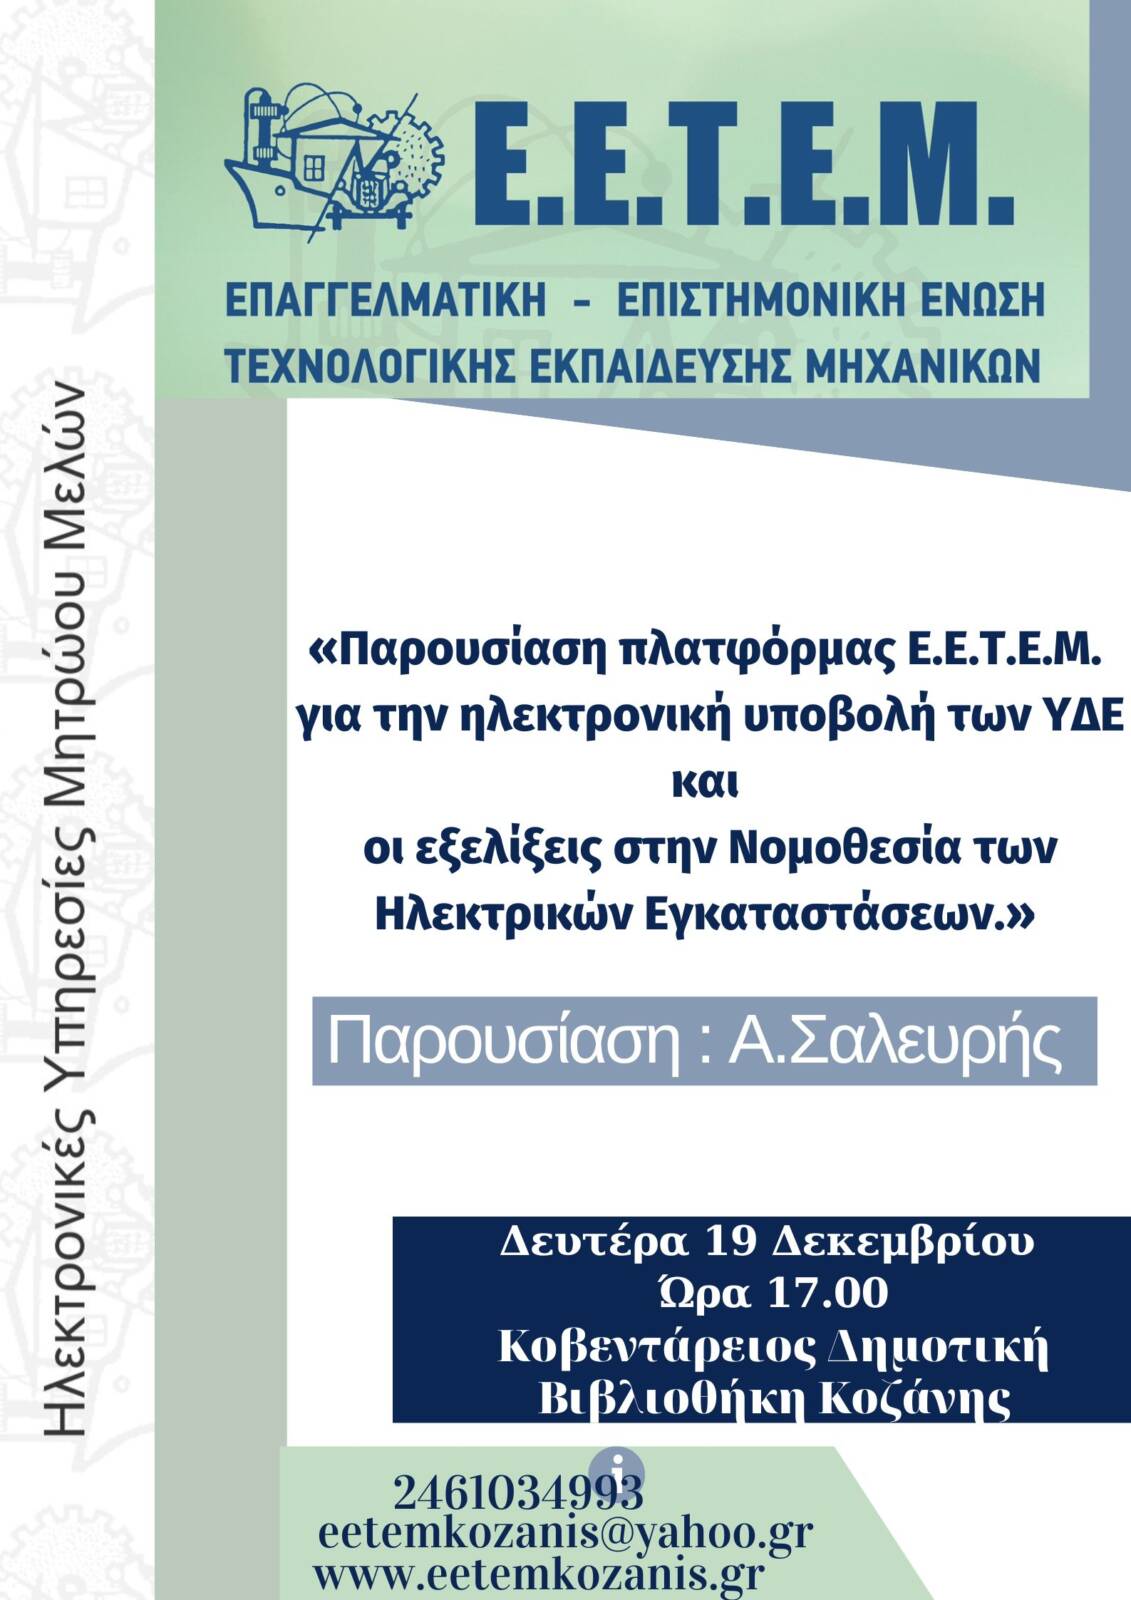 Ε.Ε.Τ.Ε.Μ. Ν.Τ. Κοζάνης – Γρεβενών: Eνημερωτική εκδήλωση με θέμα:«Παρουσίαση πλατφόρμας Ε.Ε.Τ.Ε.Μ. για την ηλεκτρονική υποβολή των ΥΔΕ και οι εξελίξεις στην Νομοθεσία των Ηλεκτρικών Εγκαταστάσεων